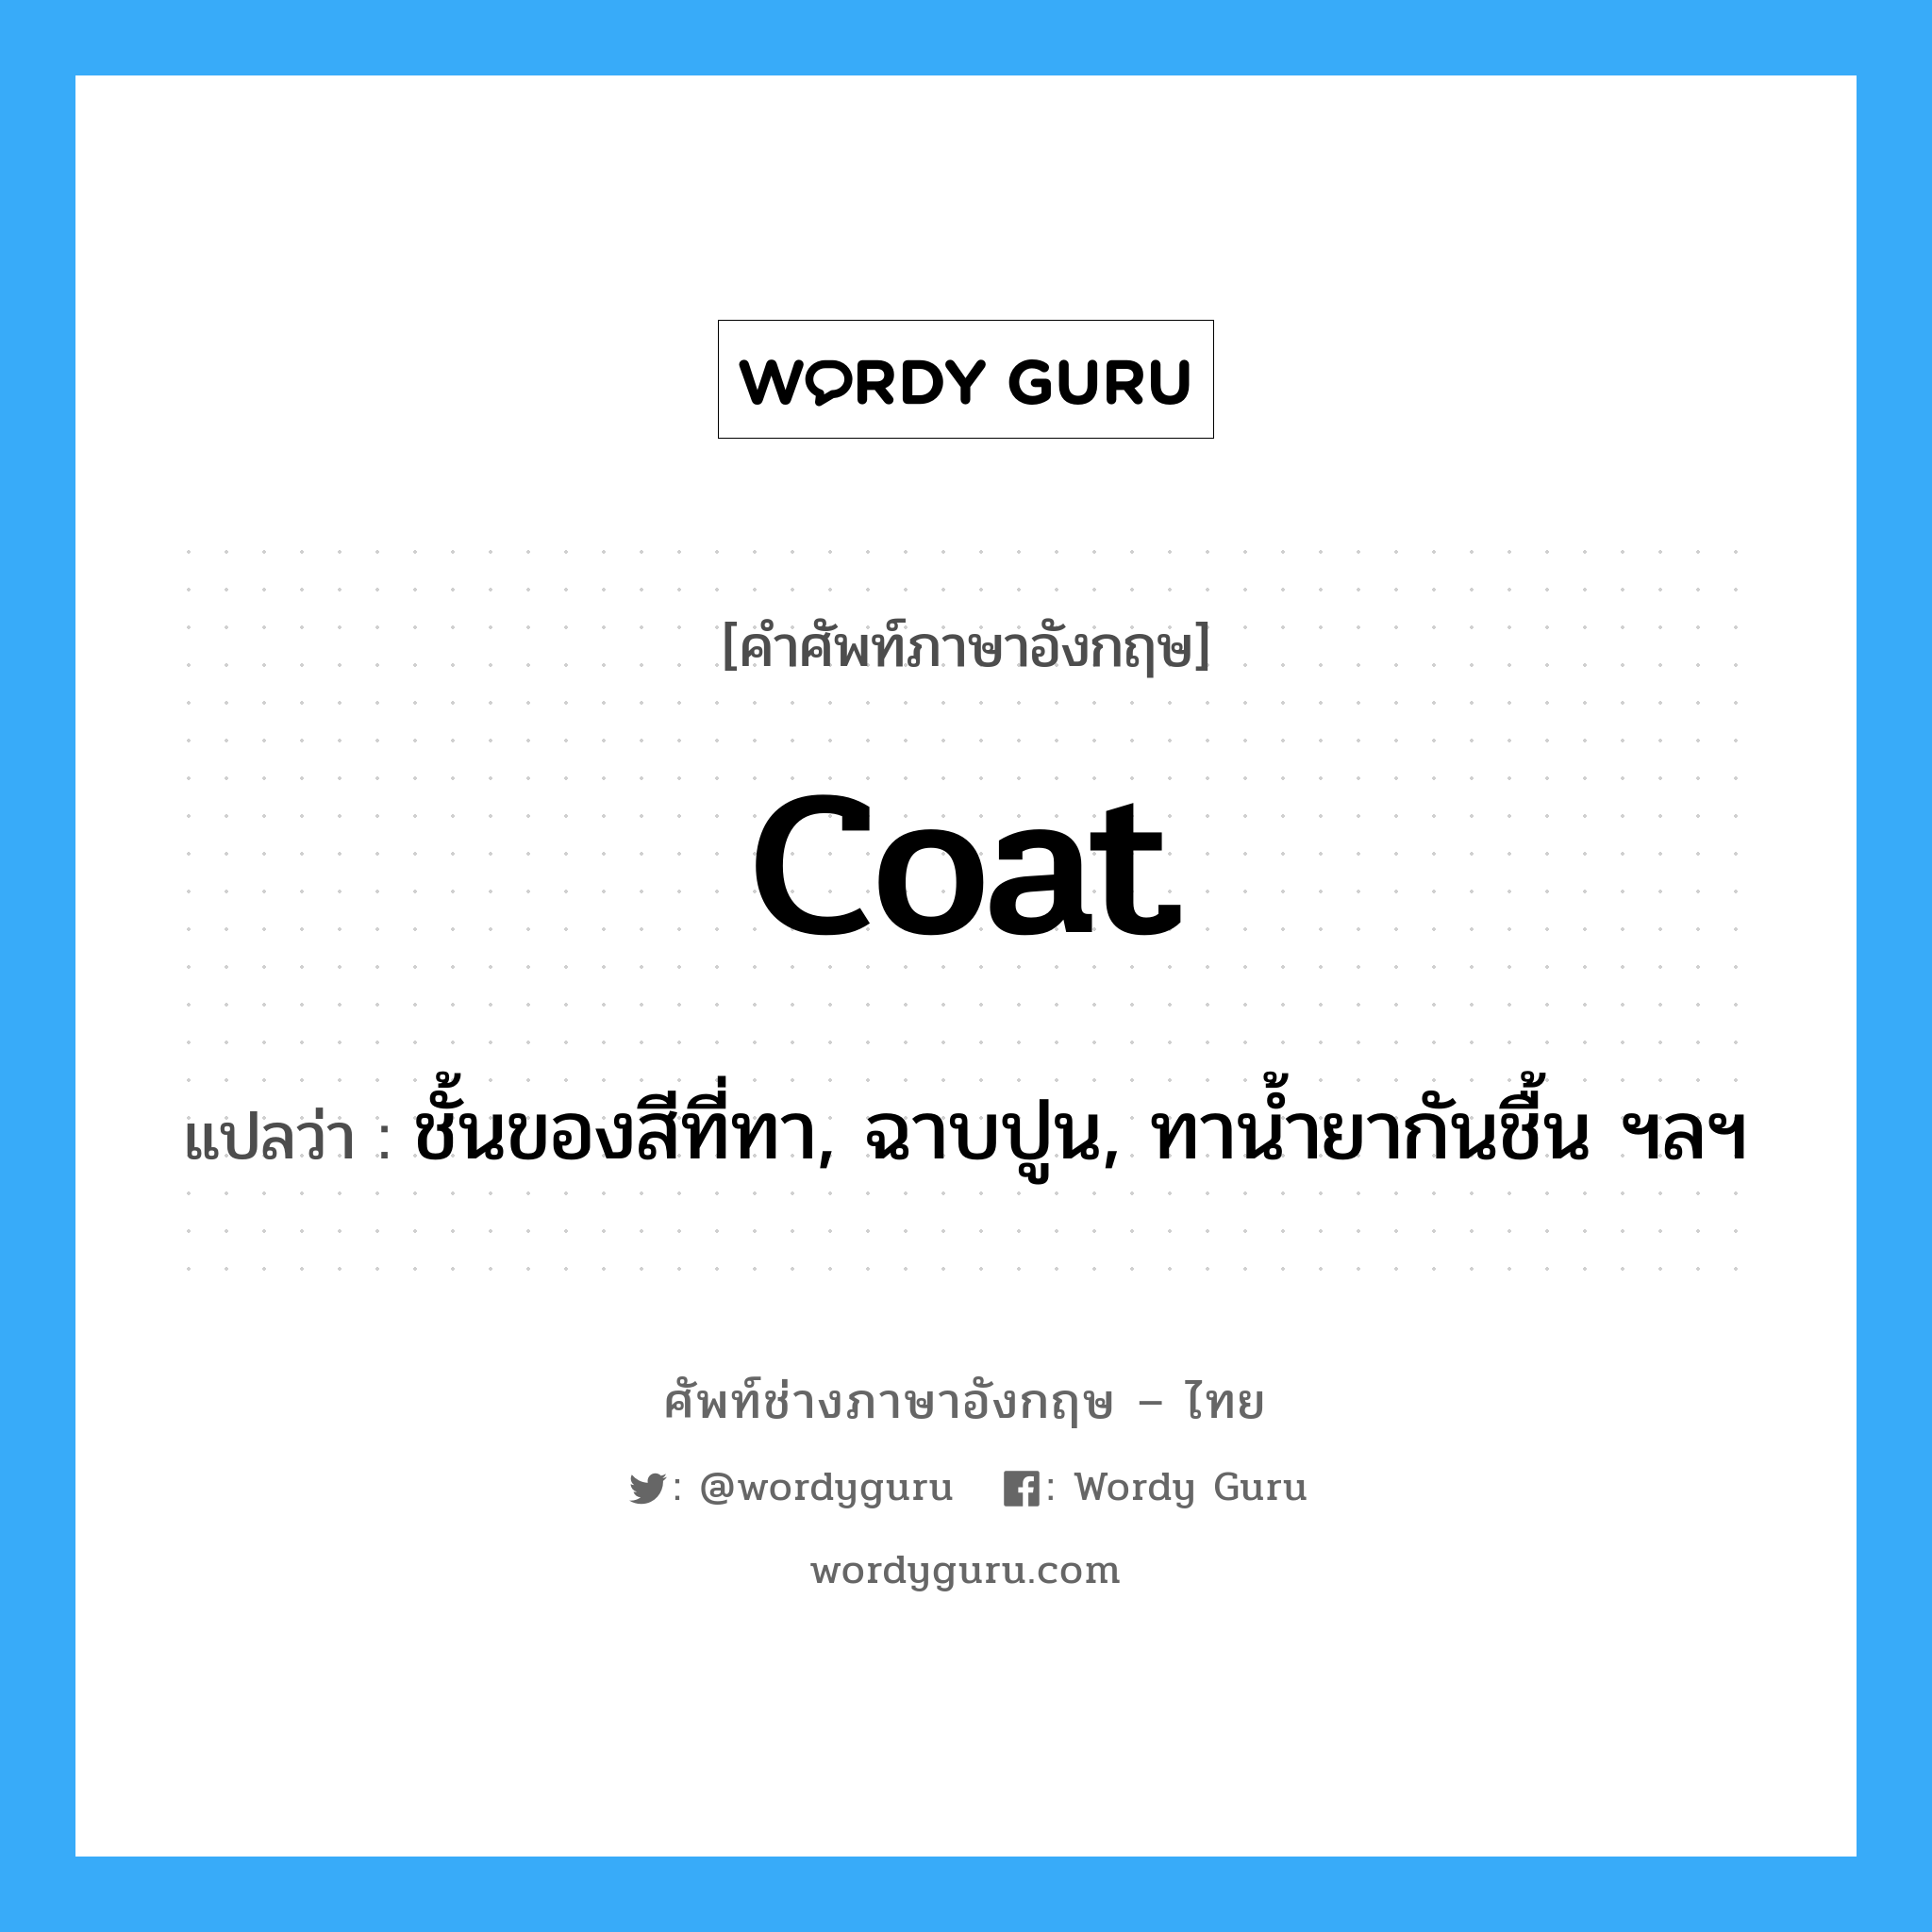 coat แปลว่า?, คำศัพท์ช่างภาษาอังกฤษ - ไทย coat คำศัพท์ภาษาอังกฤษ coat แปลว่า ชั้นของสีที่ทา, ฉาบปูน, ทาน้ำยากันชื้น ฯลฯ